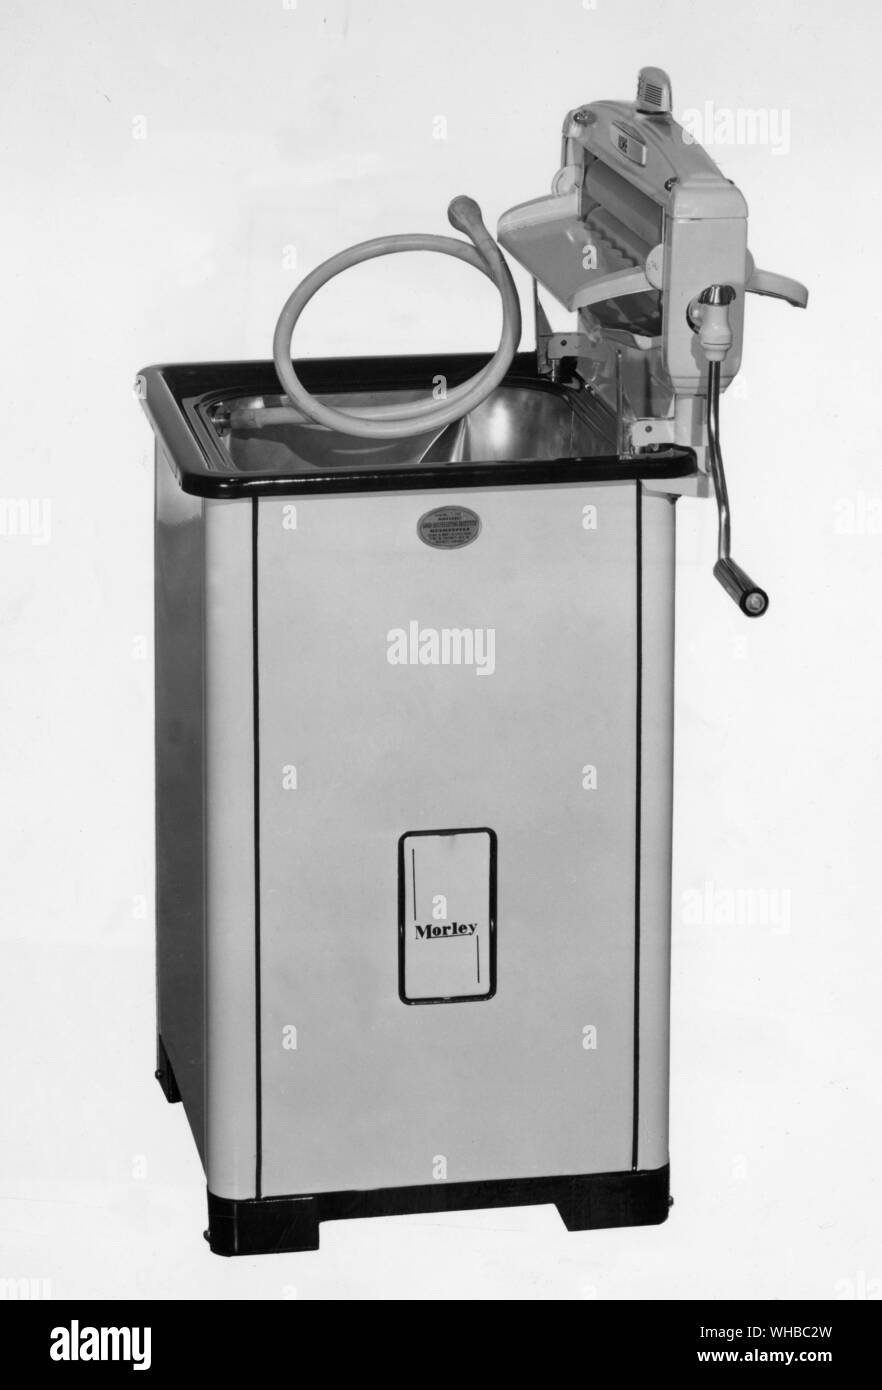 Morley - gas/elettrica della macchina di lavaggio. Foto Stock